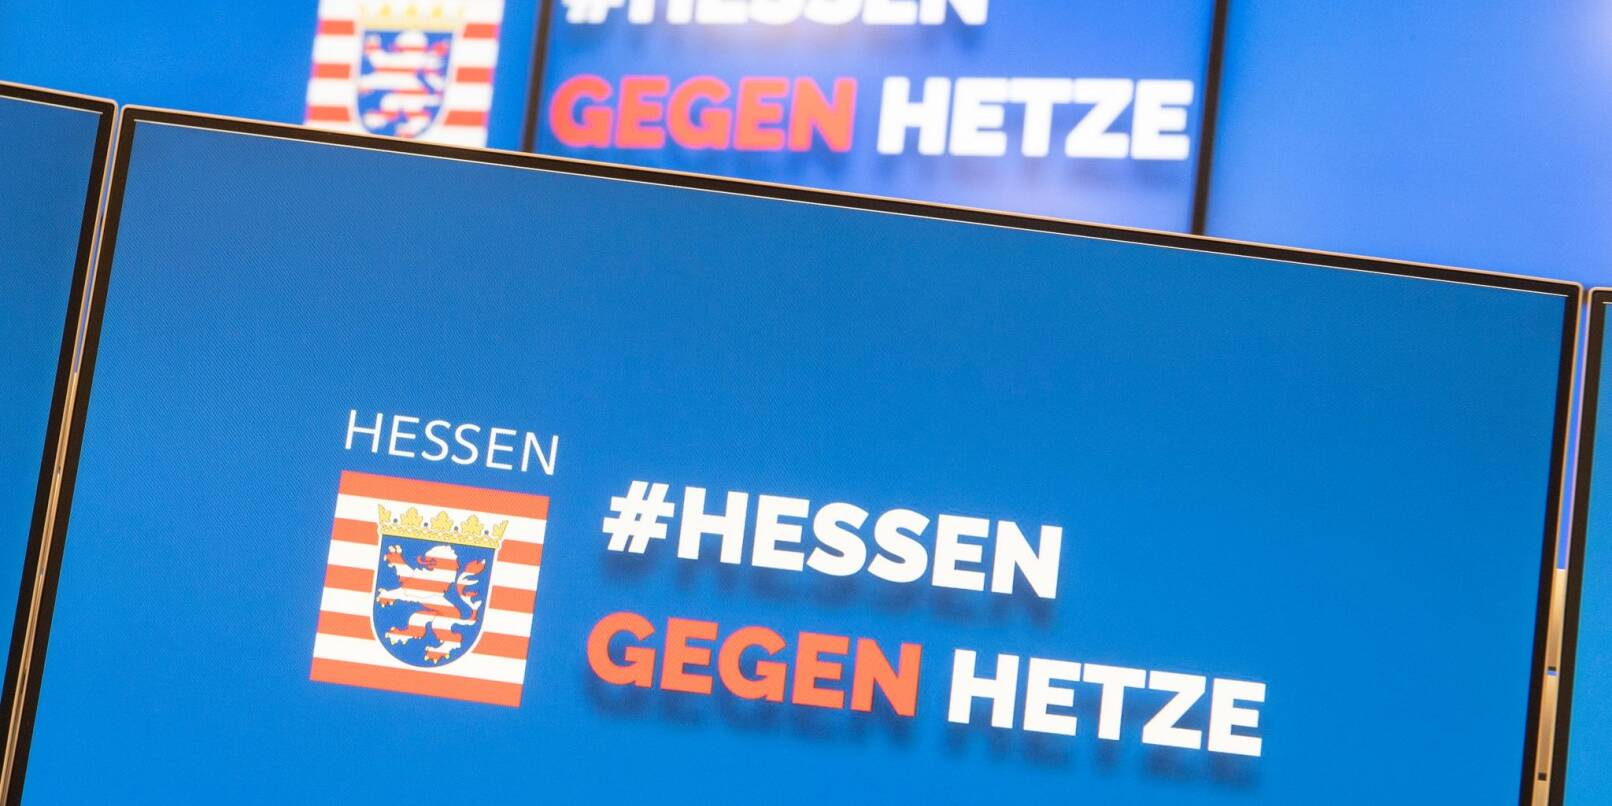 «Hessen gegen Hetze» ist in der zentralen Meldestelle «Hessen 3C» auf Monitoren zu lesen.